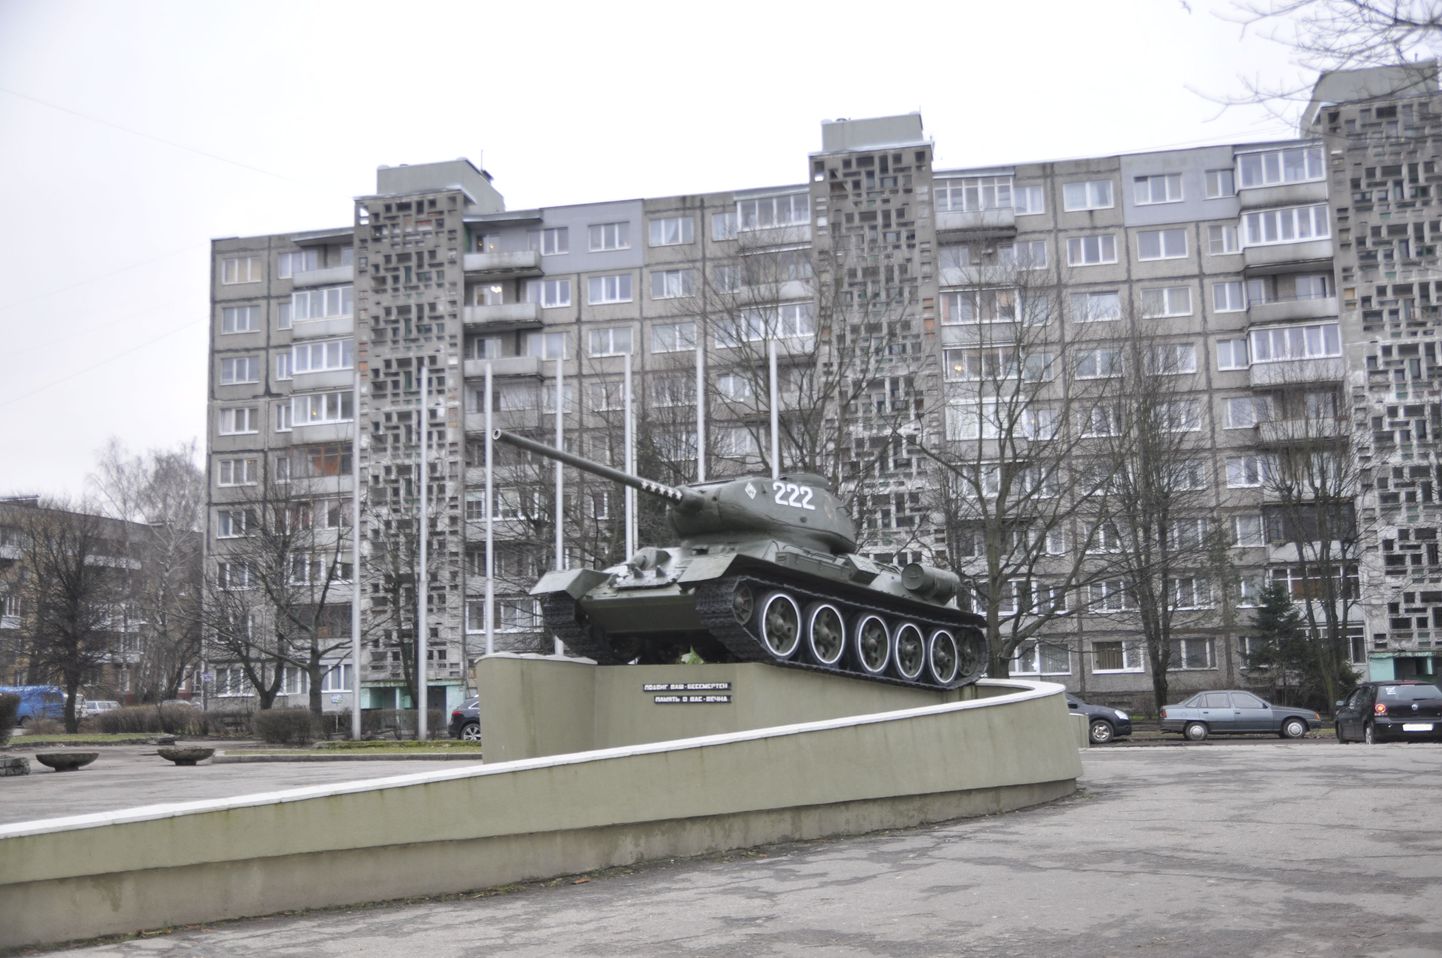 Teise maailmasõja-aegne legendaarne tank T-34 keset Kaliningradi kesklinna elamurajooni. Nõukogude ajast püstitatud tank-mälestusmärgi tähtedega kaunistatud kahuritoru on kohalikele harjumuspäraselt suunatud läände.